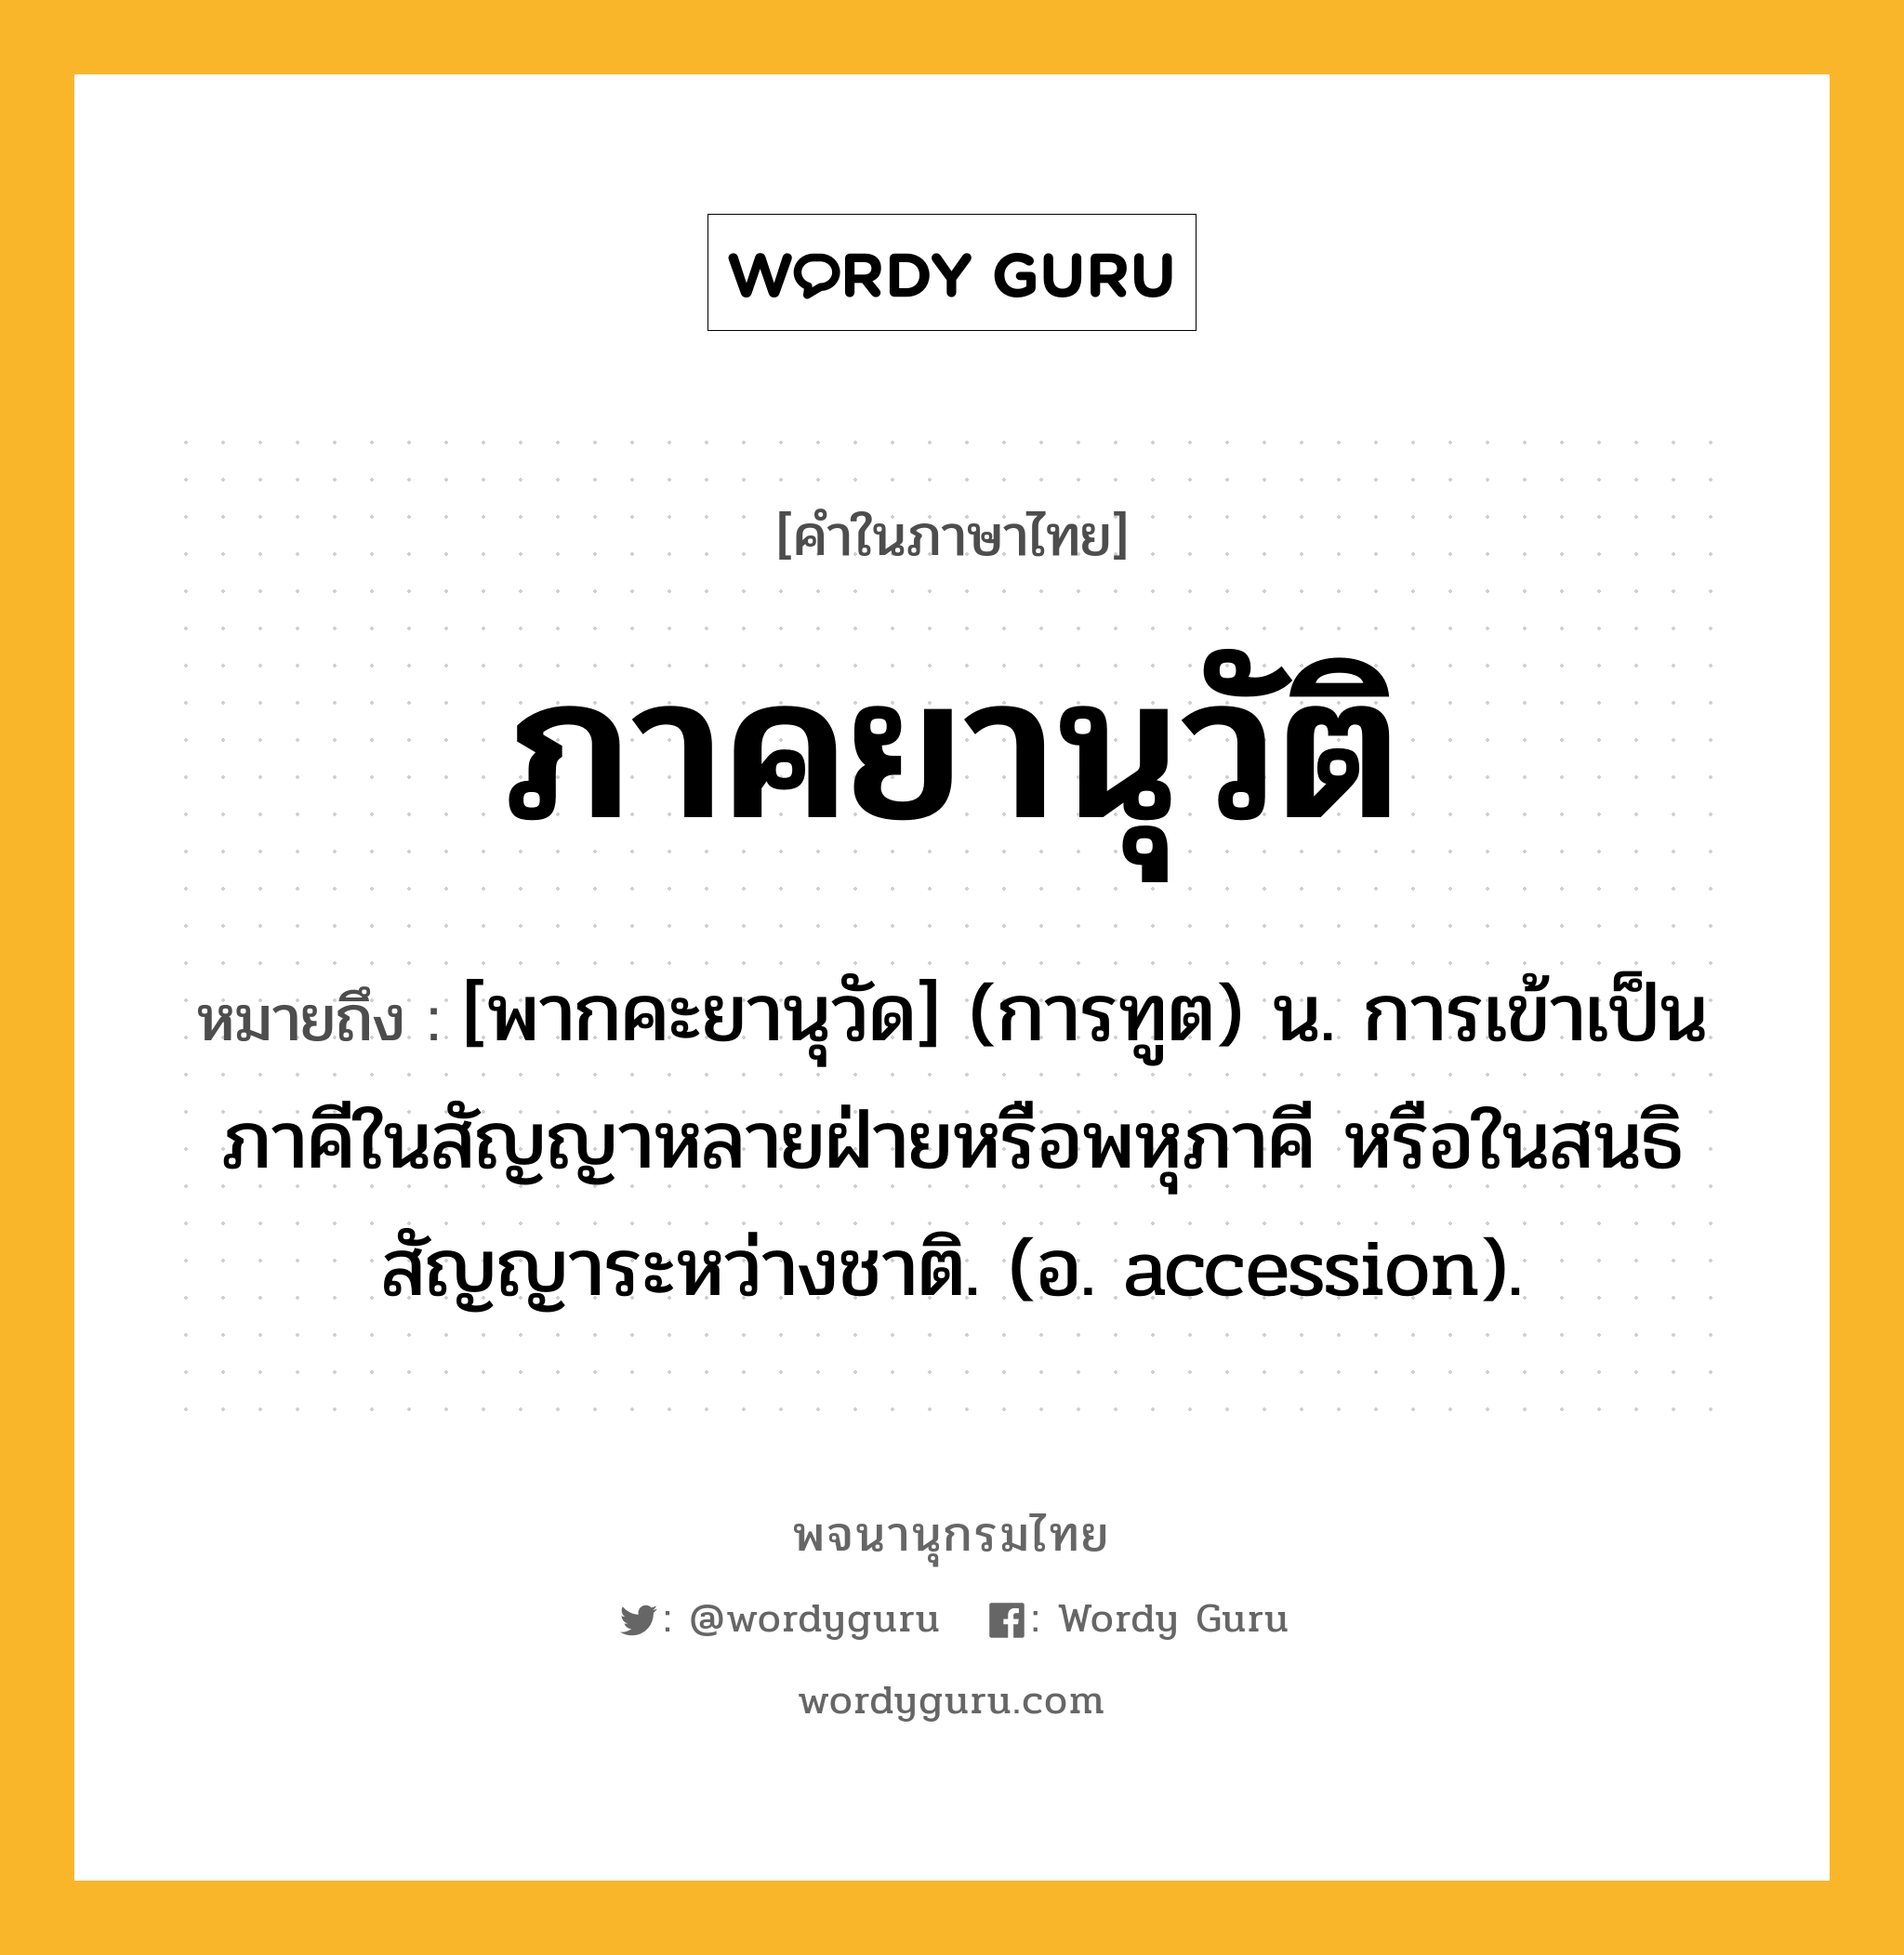 ภาคยานุวัติ หมายถึงอะไร?, คำในภาษาไทย ภาคยานุวัติ หมายถึง [พากคะยานุวัด] (การทูต) น. การเข้าเป็นภาคีในสัญญาหลายฝ่ายหรือพหุภาคี หรือในสนธิสัญญาระหว่างชาติ. (อ. accession).